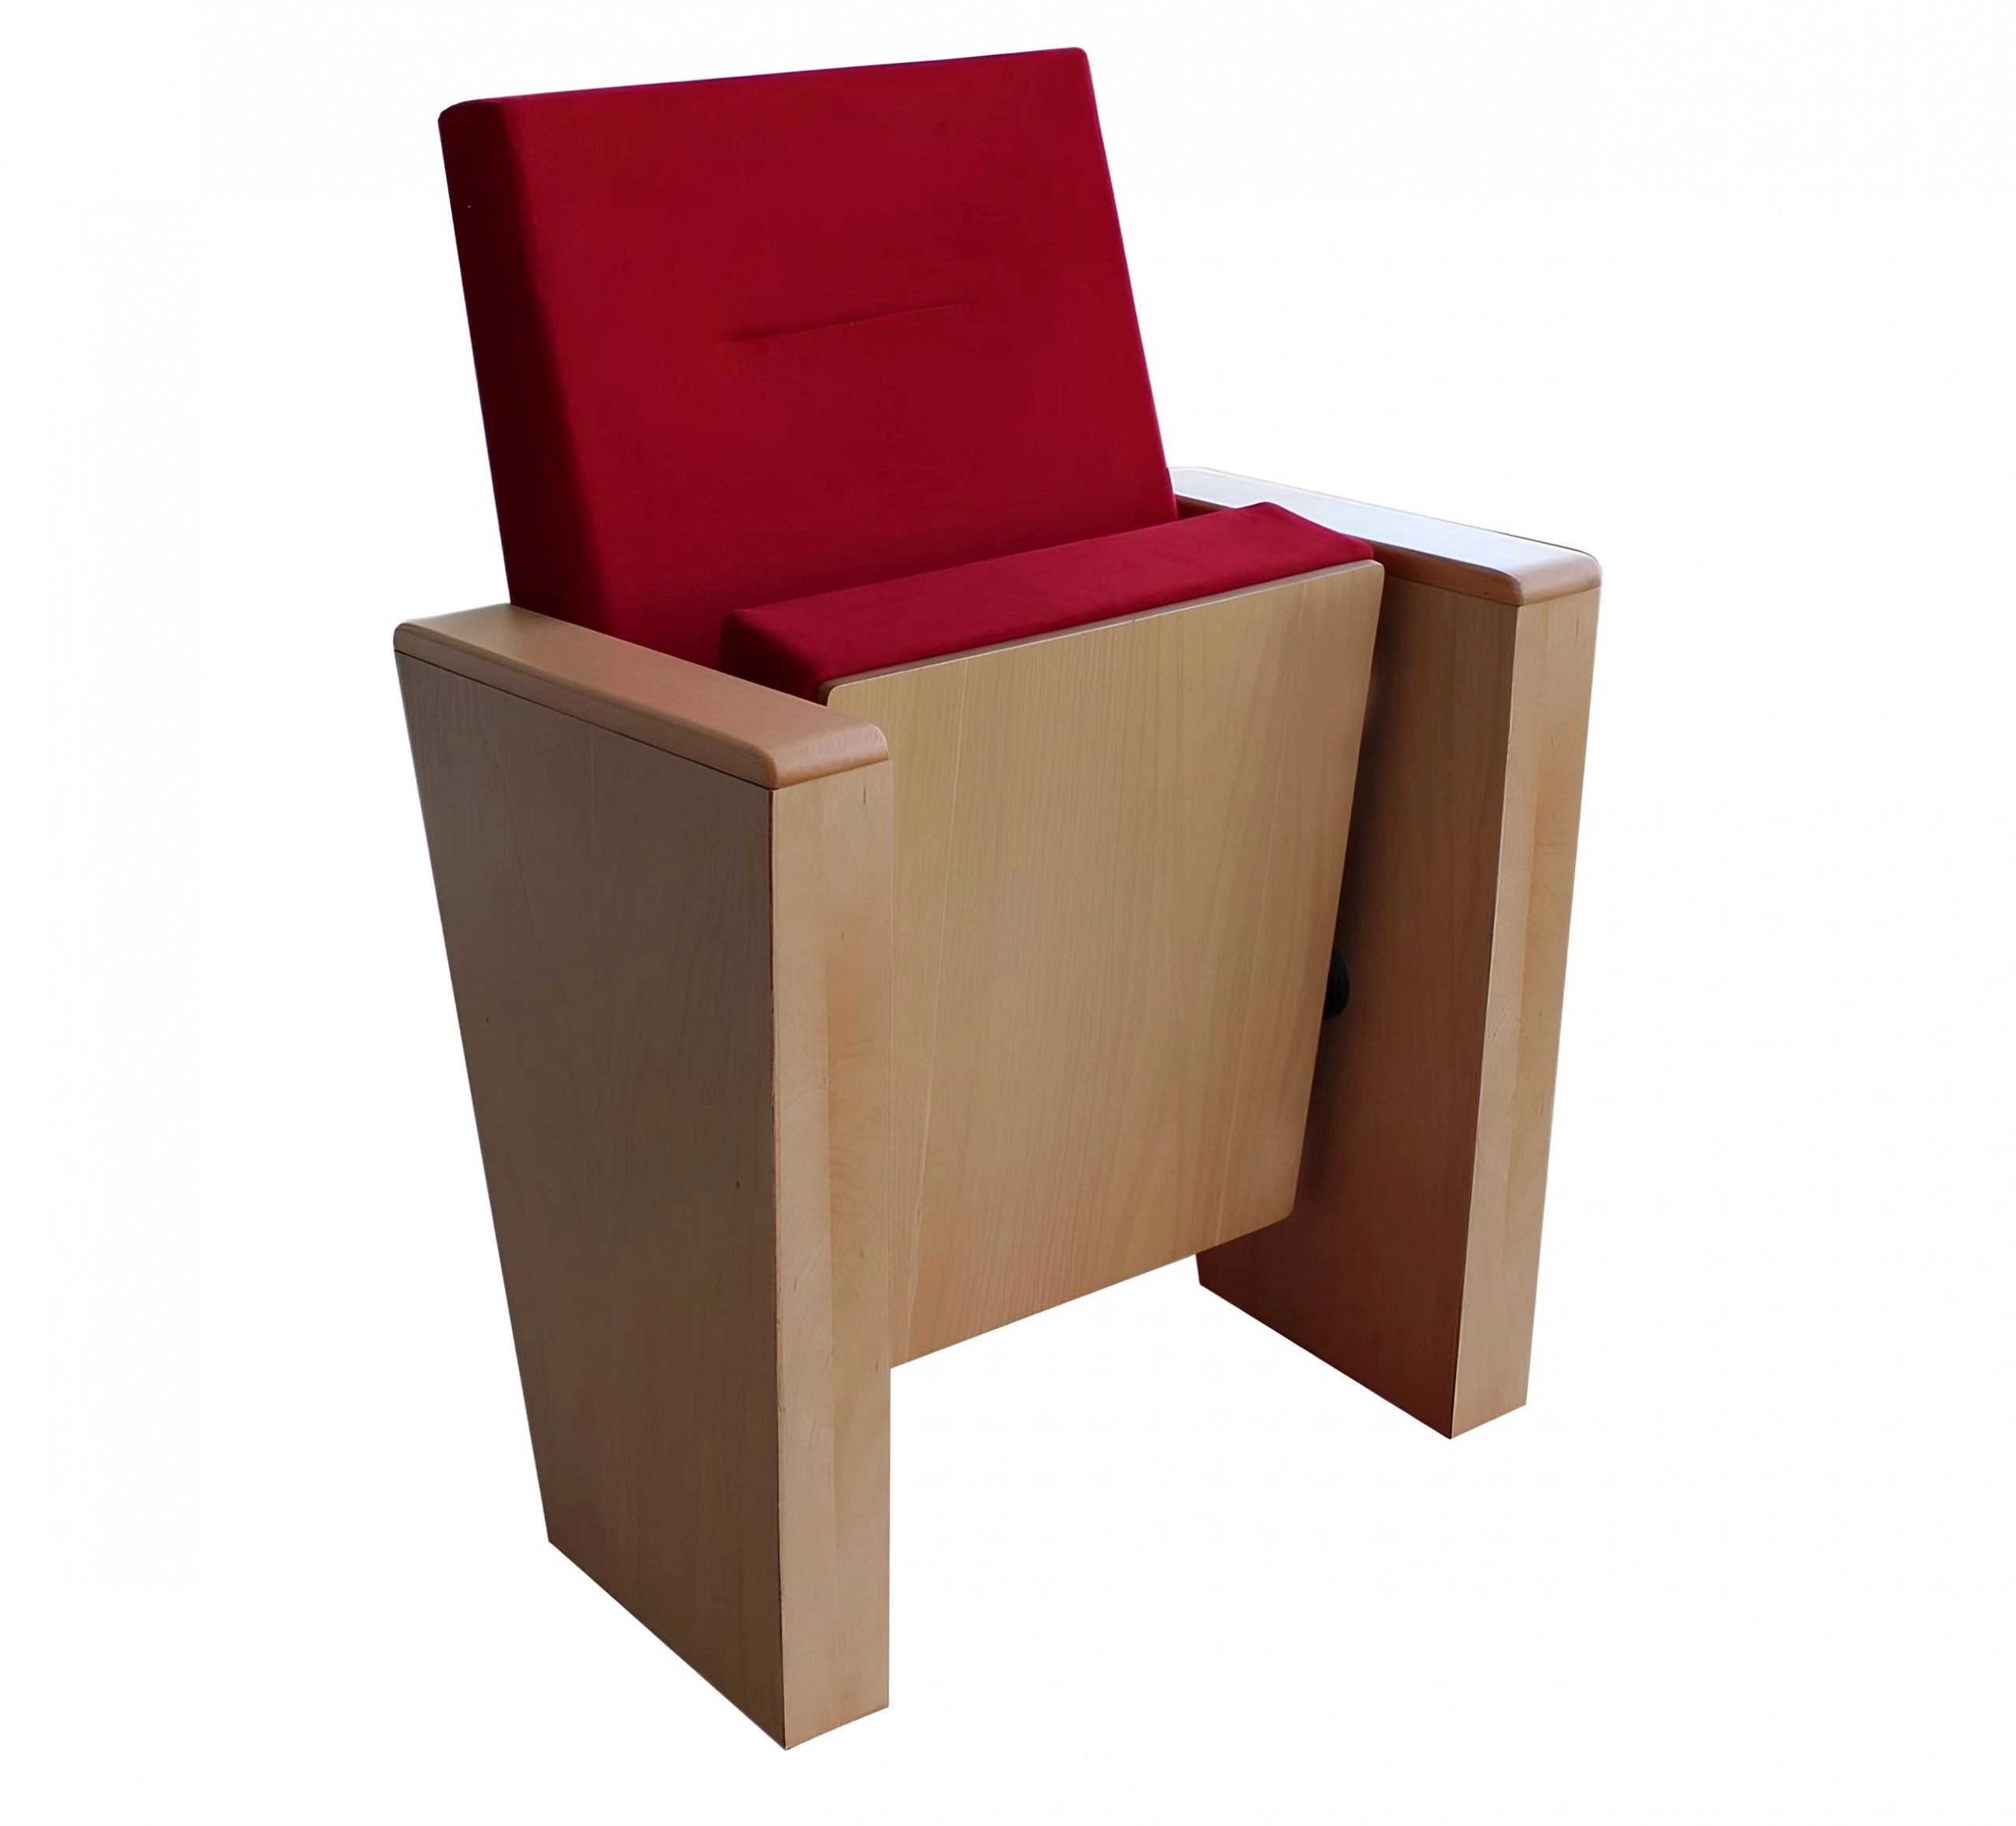 Teon Series - Auditorium, Theatre, Cinema Chair - Turkey - Seatorium - Public Seating Manufacturer